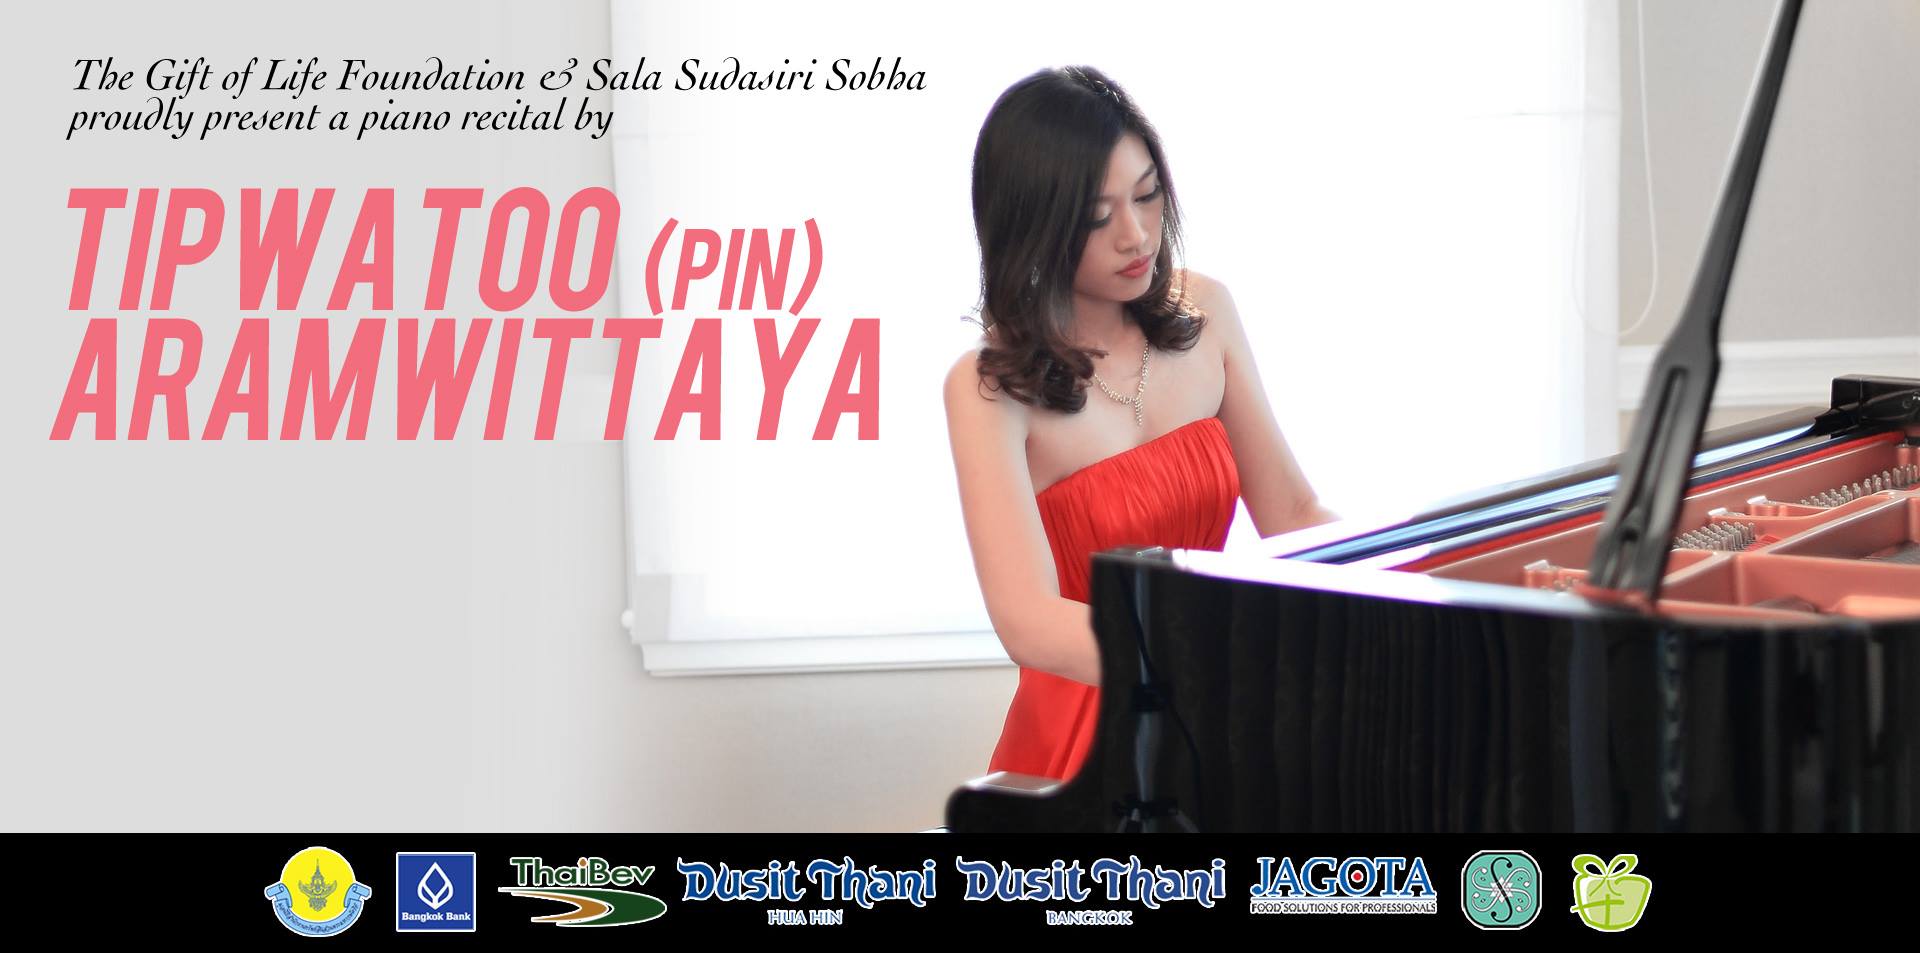 Piano Recital by Tipwatoo Pin Aramwittaya